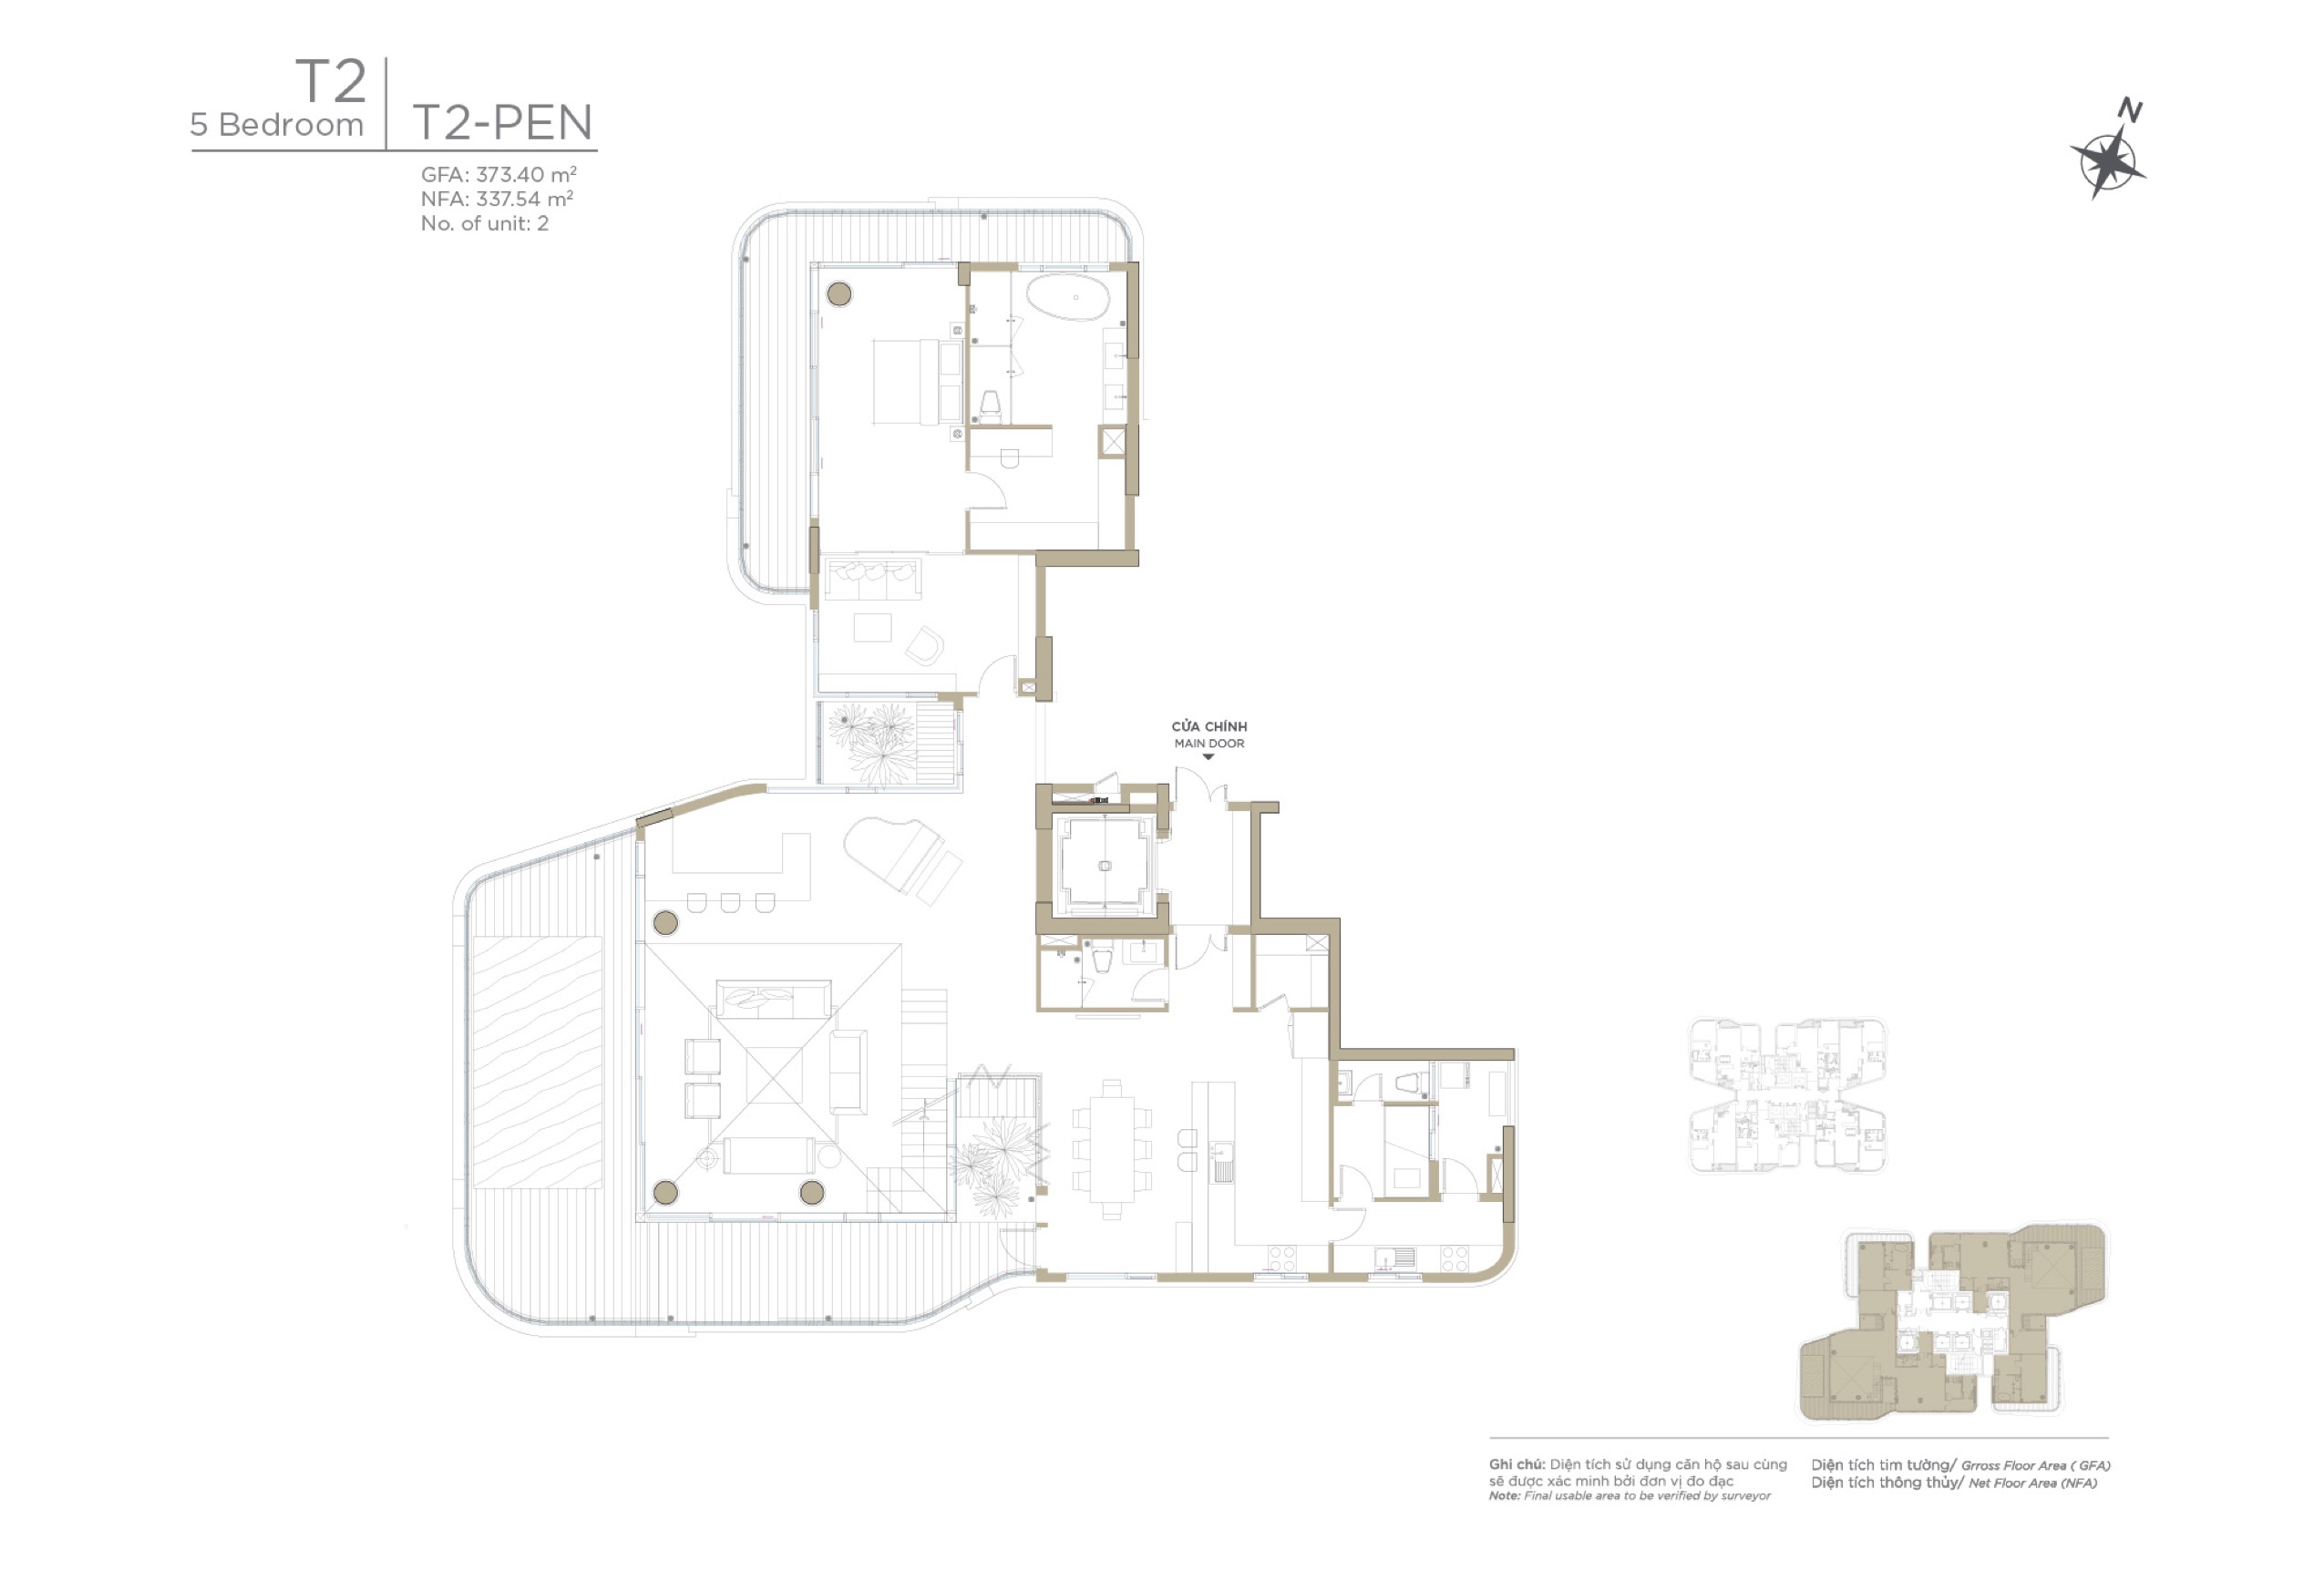 Mặt bằng layout căn hộ Duplex Penthouse 5 phòng ngủ Zeit River Thủ Thiêm tháp T2 - bán chuyển nhượng cho thuê căn hộ Duplex Penthouse 5 phòng ngủ Zeit River Thủ thiêm tháp T2